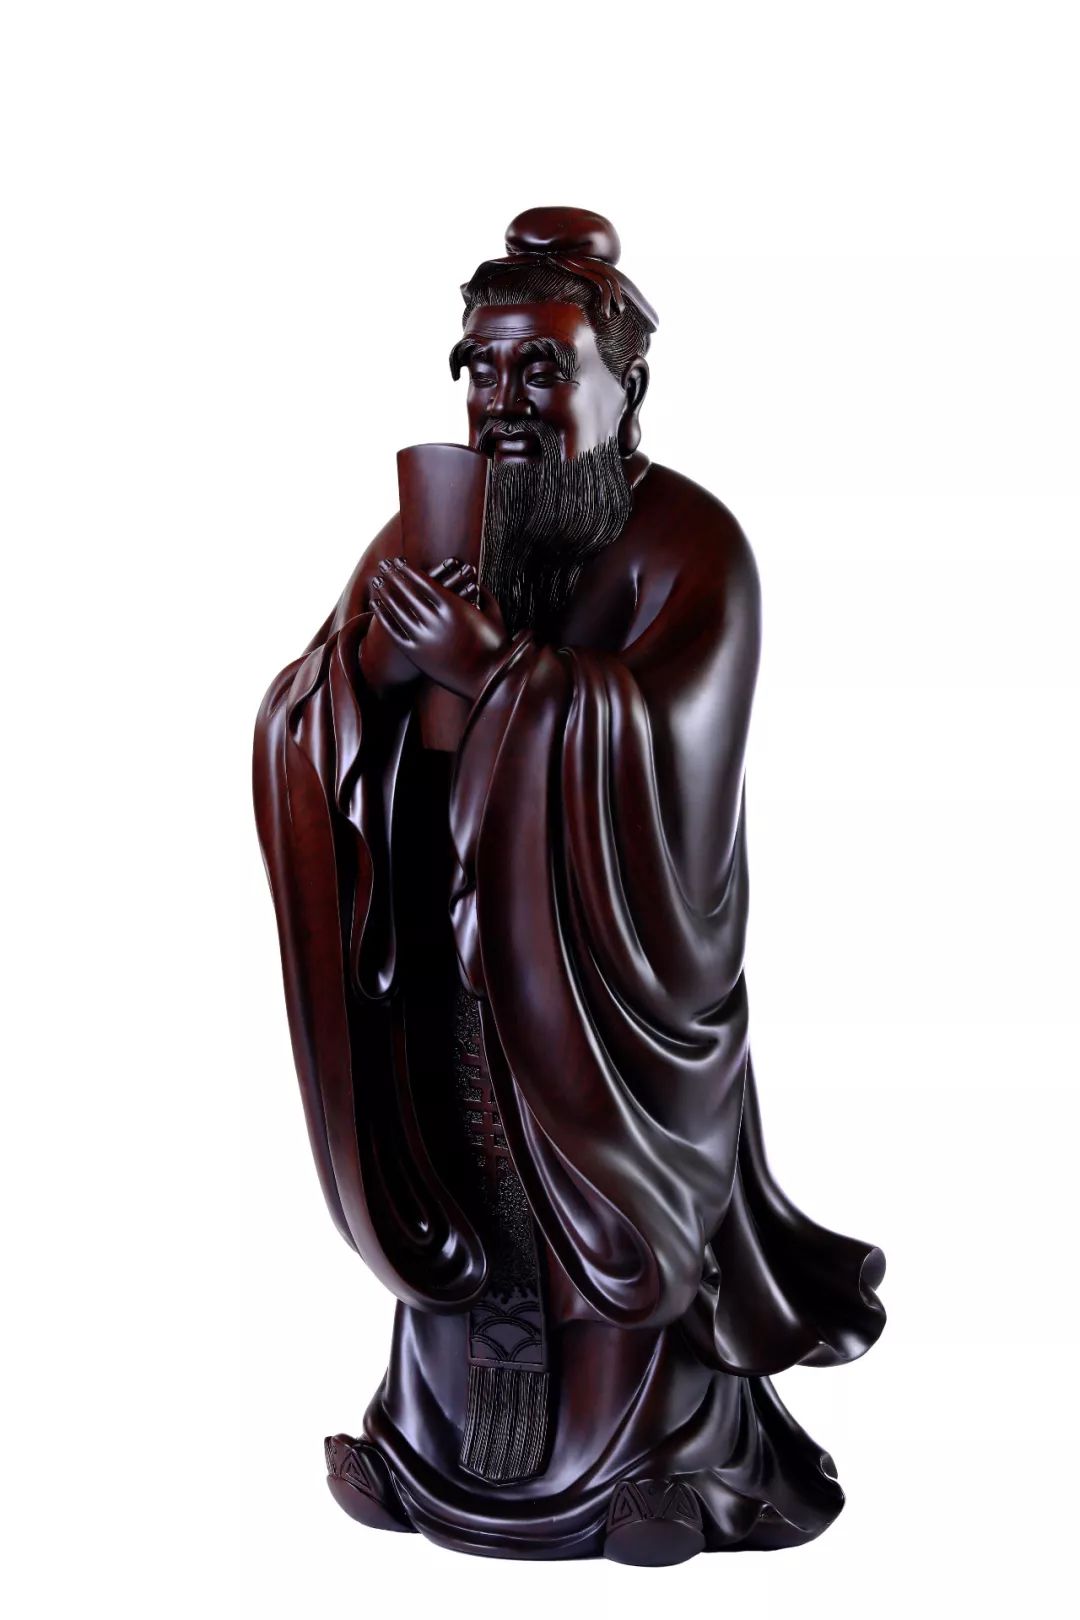 中国木雕第一人黄泉福图片